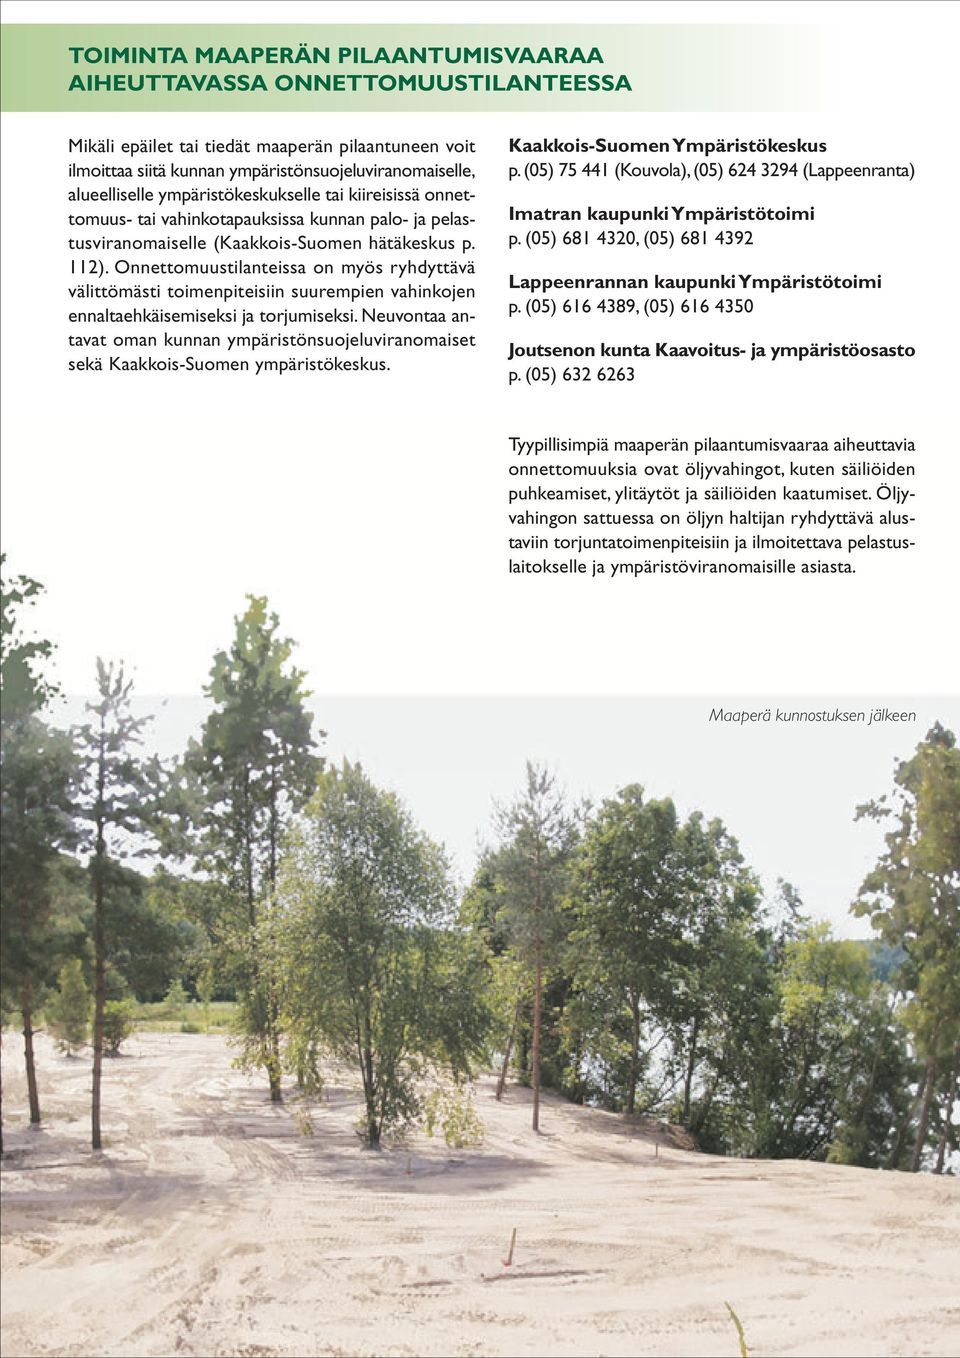 välittömästi toimenpiteisiin suurempien vahinkojen ennaltaehkäisemiseksi ja torjumiseksi Neuvontaa antavat oman kunnan ympäristönsuojeluviranomaiset sekä Kaakkois-Suomen ympäristökeskus